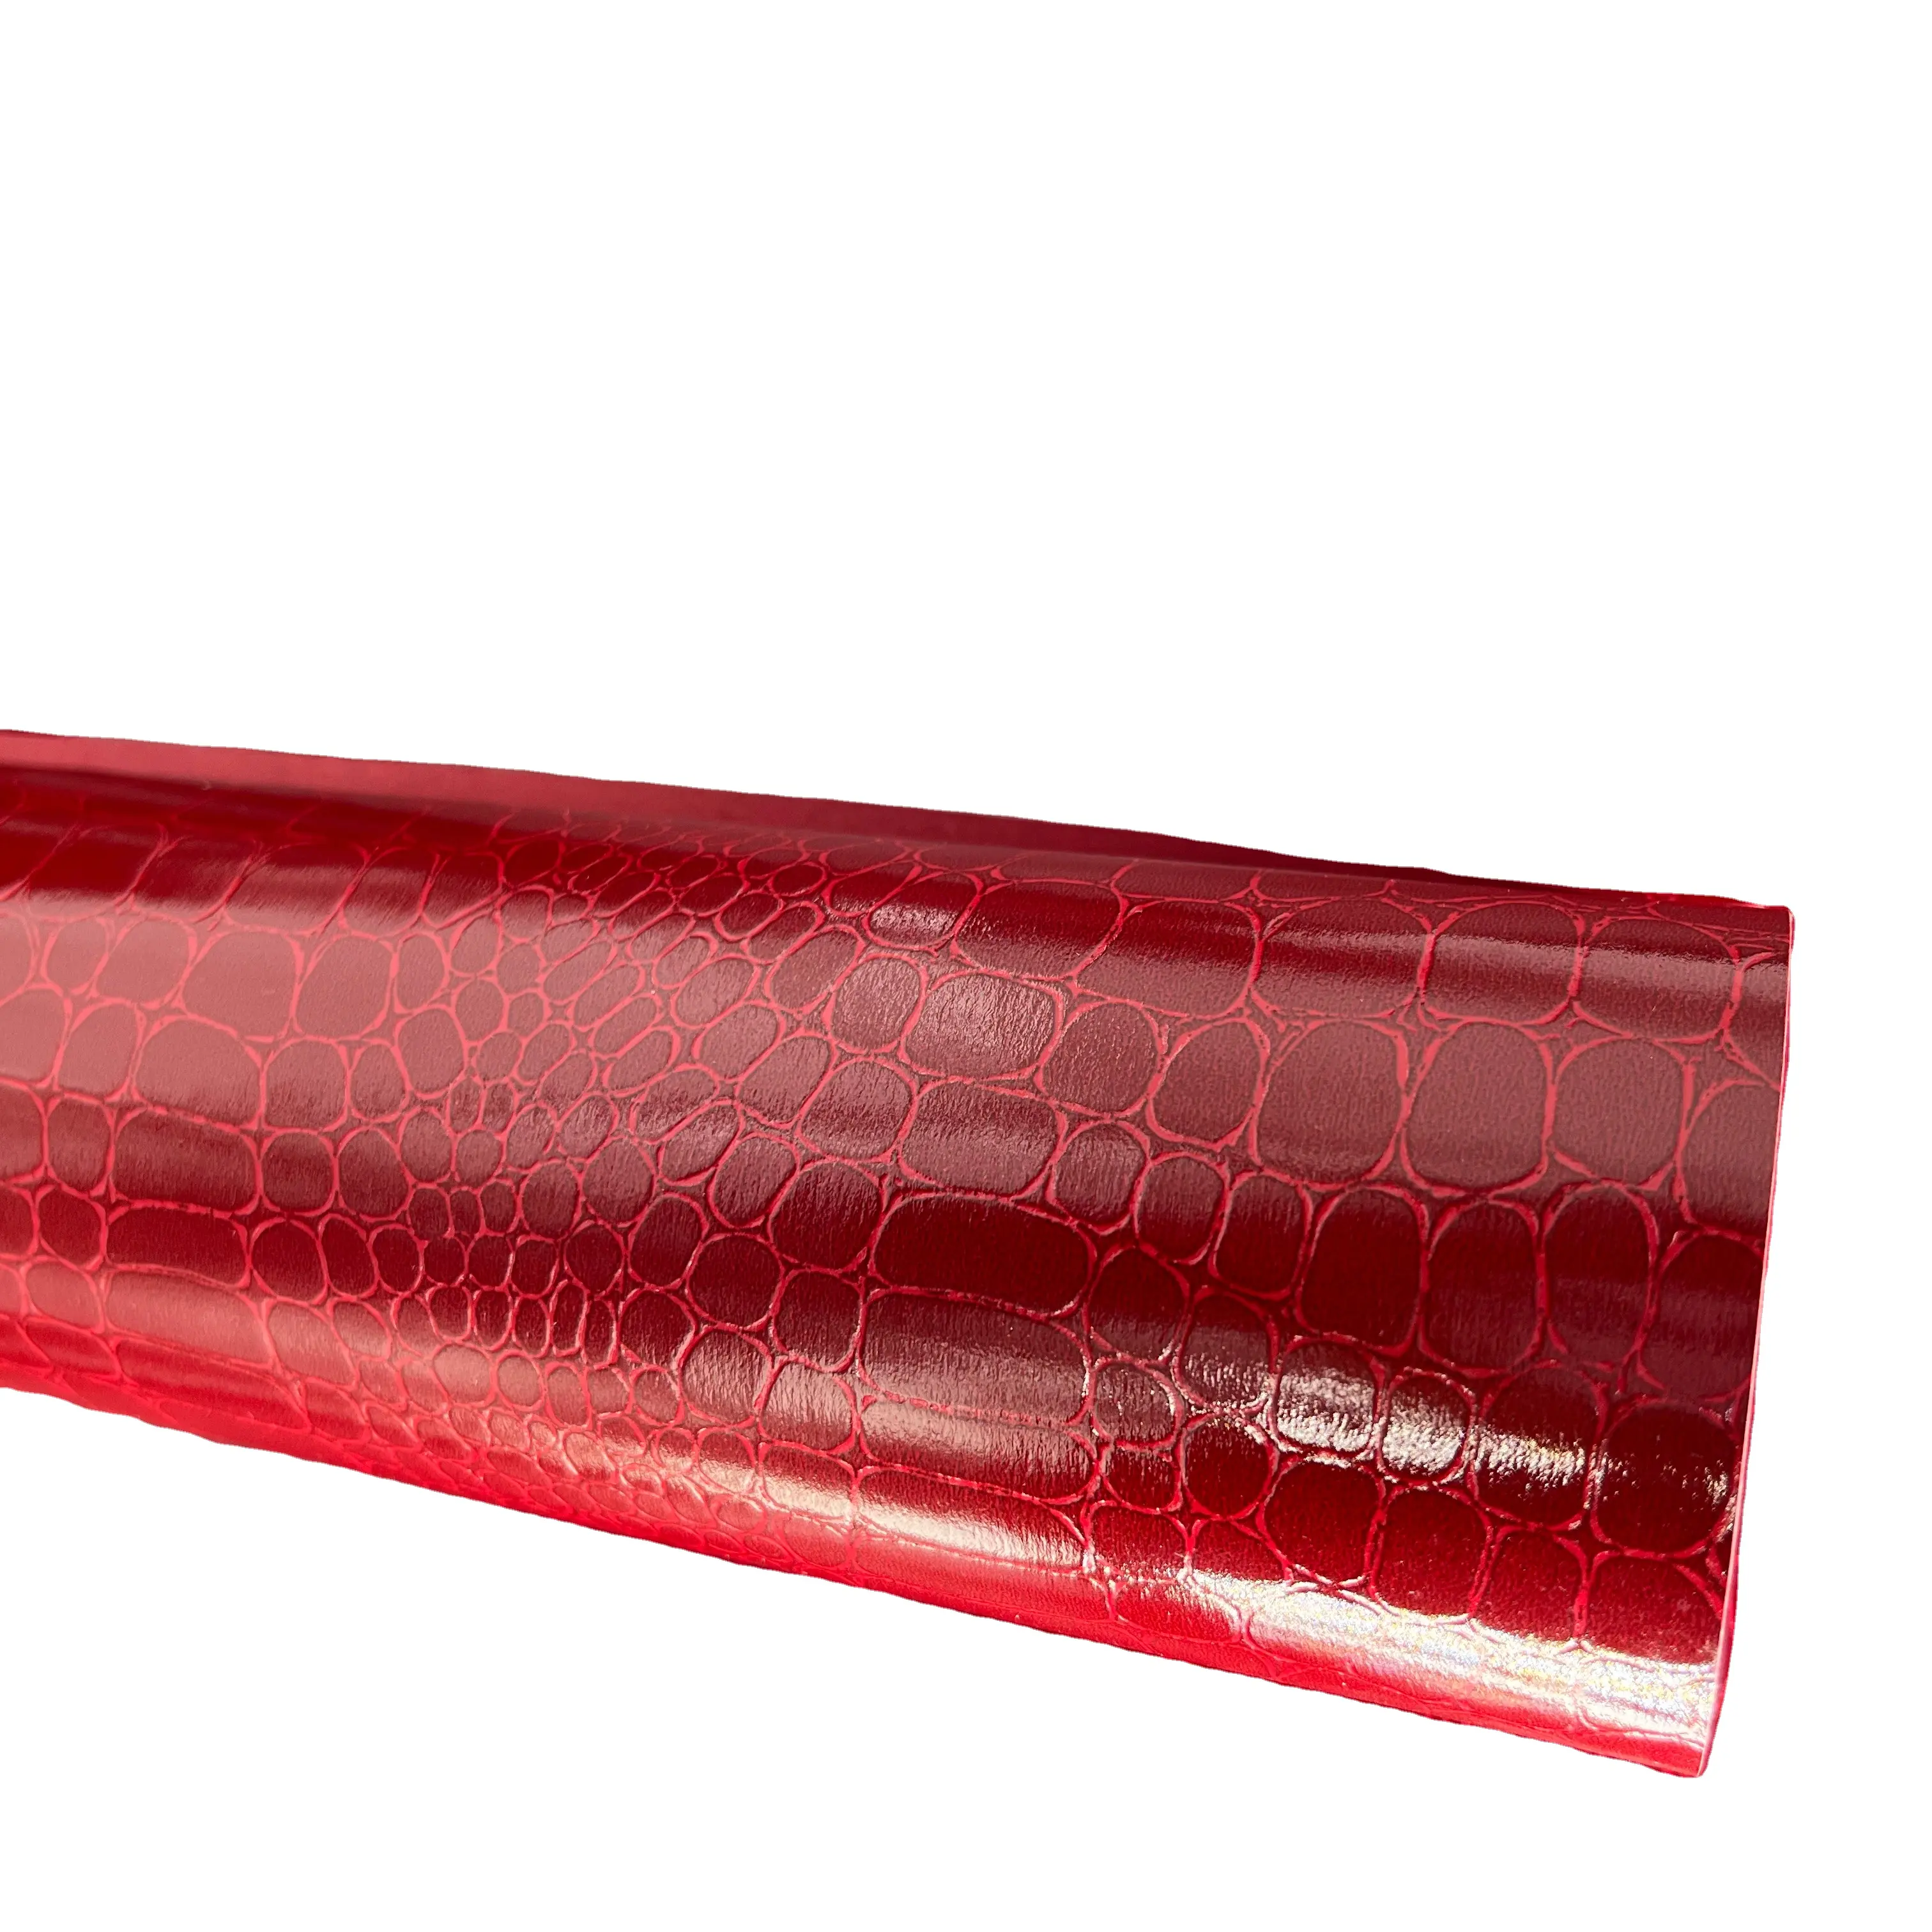 Rolo de couro sintético para bolsas, rolo de couro sintético, textura de crocodilo brilhante, artesanato, tecido para bolsas, couro vermelho